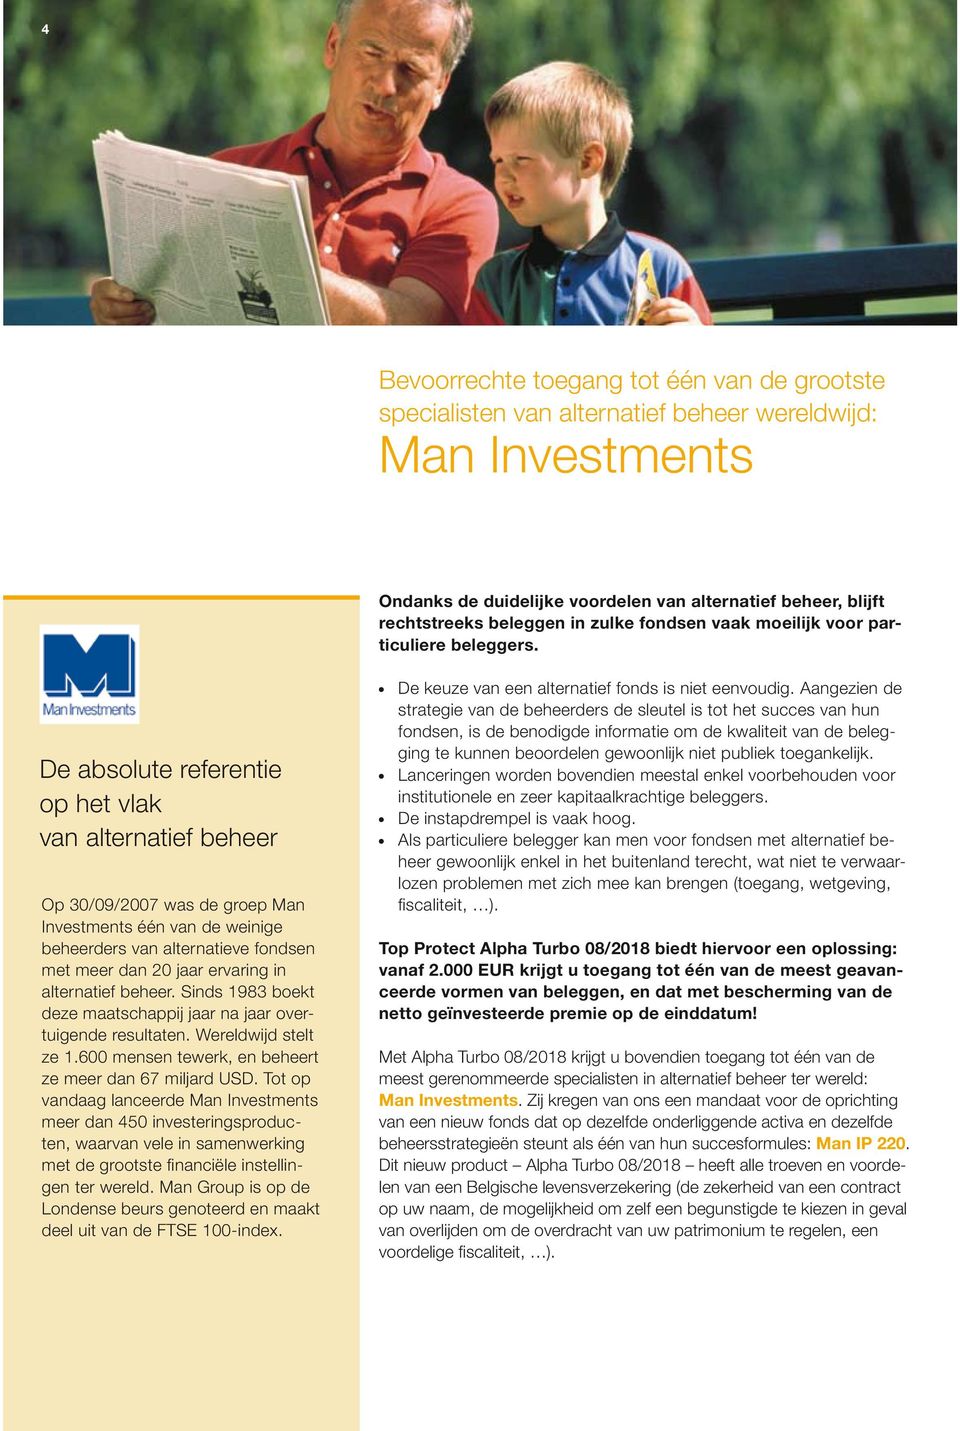 De absolute referentie op het vlak van alternatief beheer Op 30/09/2007 was de groep Man Investments één van de weinige beheerders van alternatieve fondsen met meer dan 20 jaar ervaring in